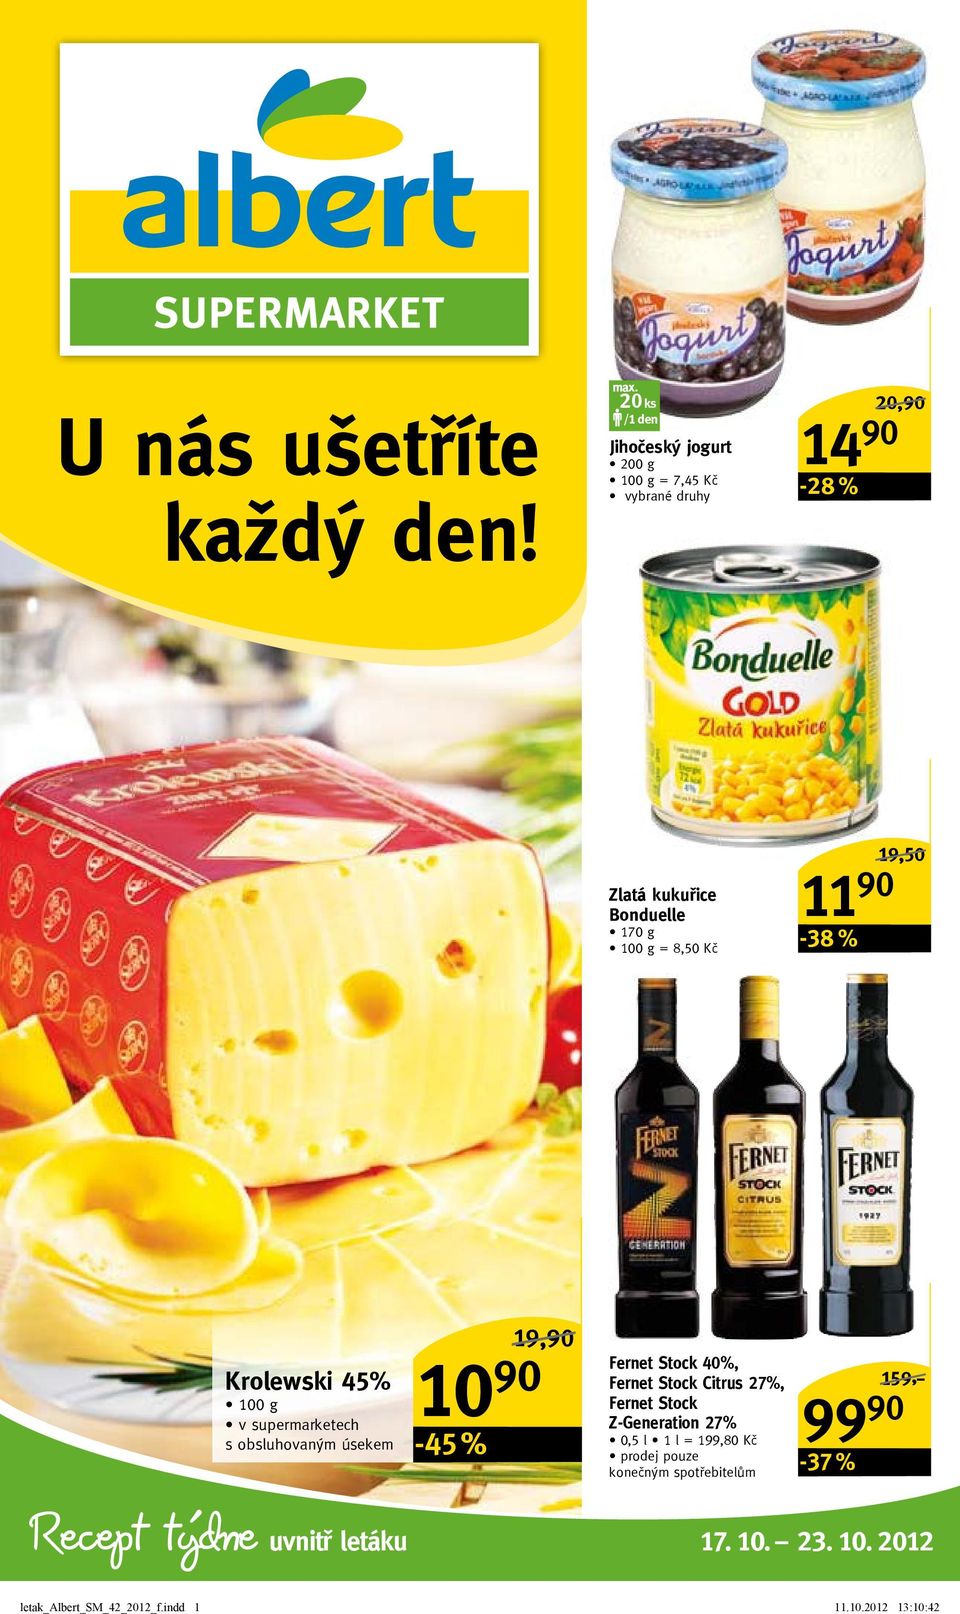 19,50/ Recept týdne Krolewski 45% v supermarketech s obsluhovaným úsekem uvnitř letáku 10 90-45 % Fernet Stock 40%,